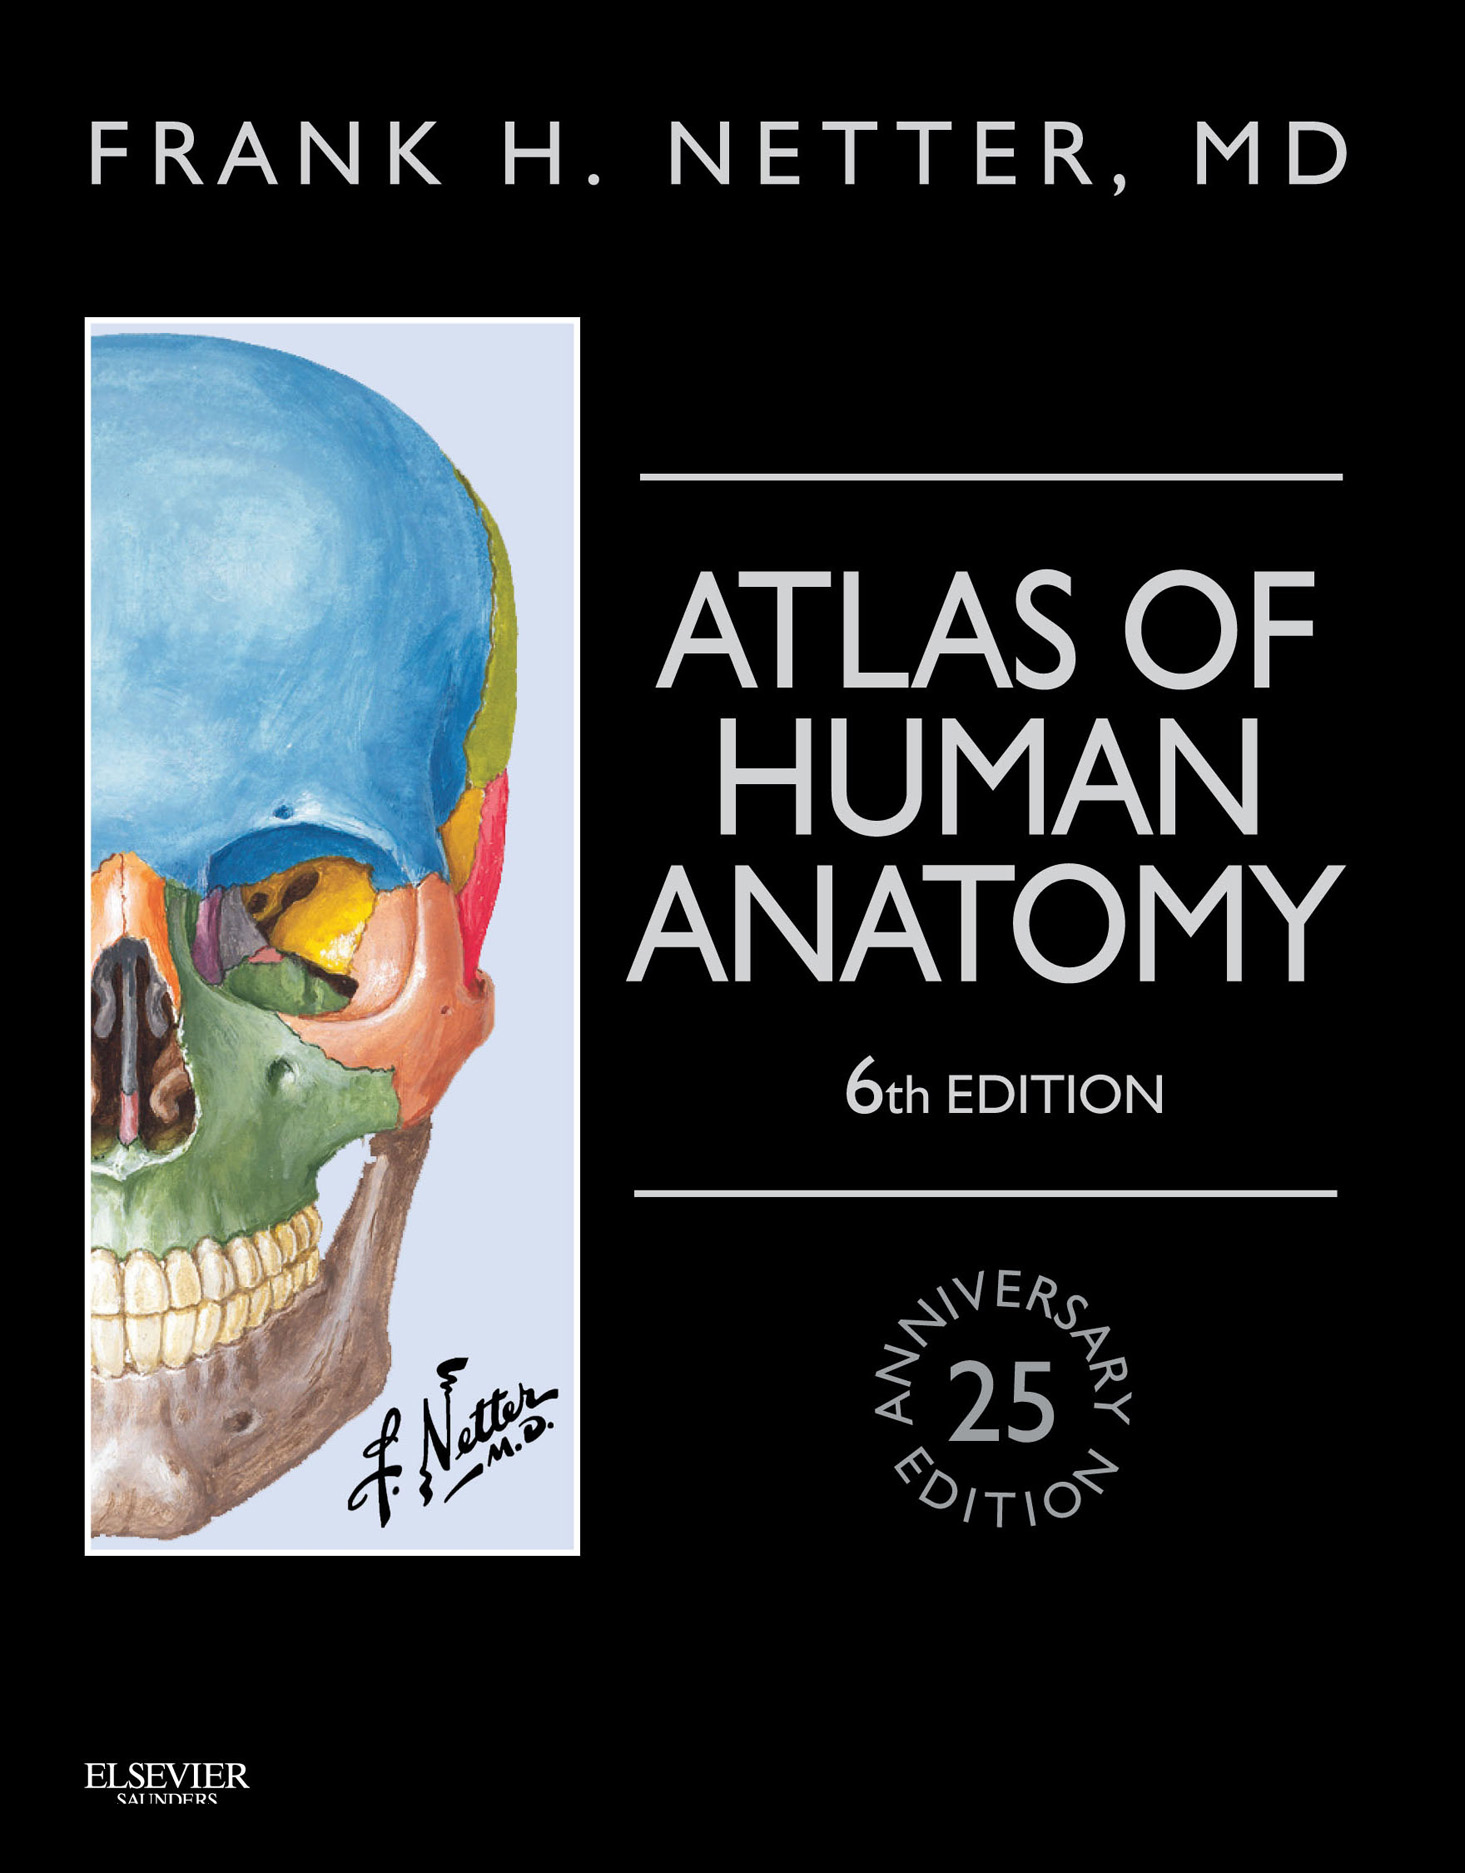 Фрэнк Неттер анатомия 6 издание